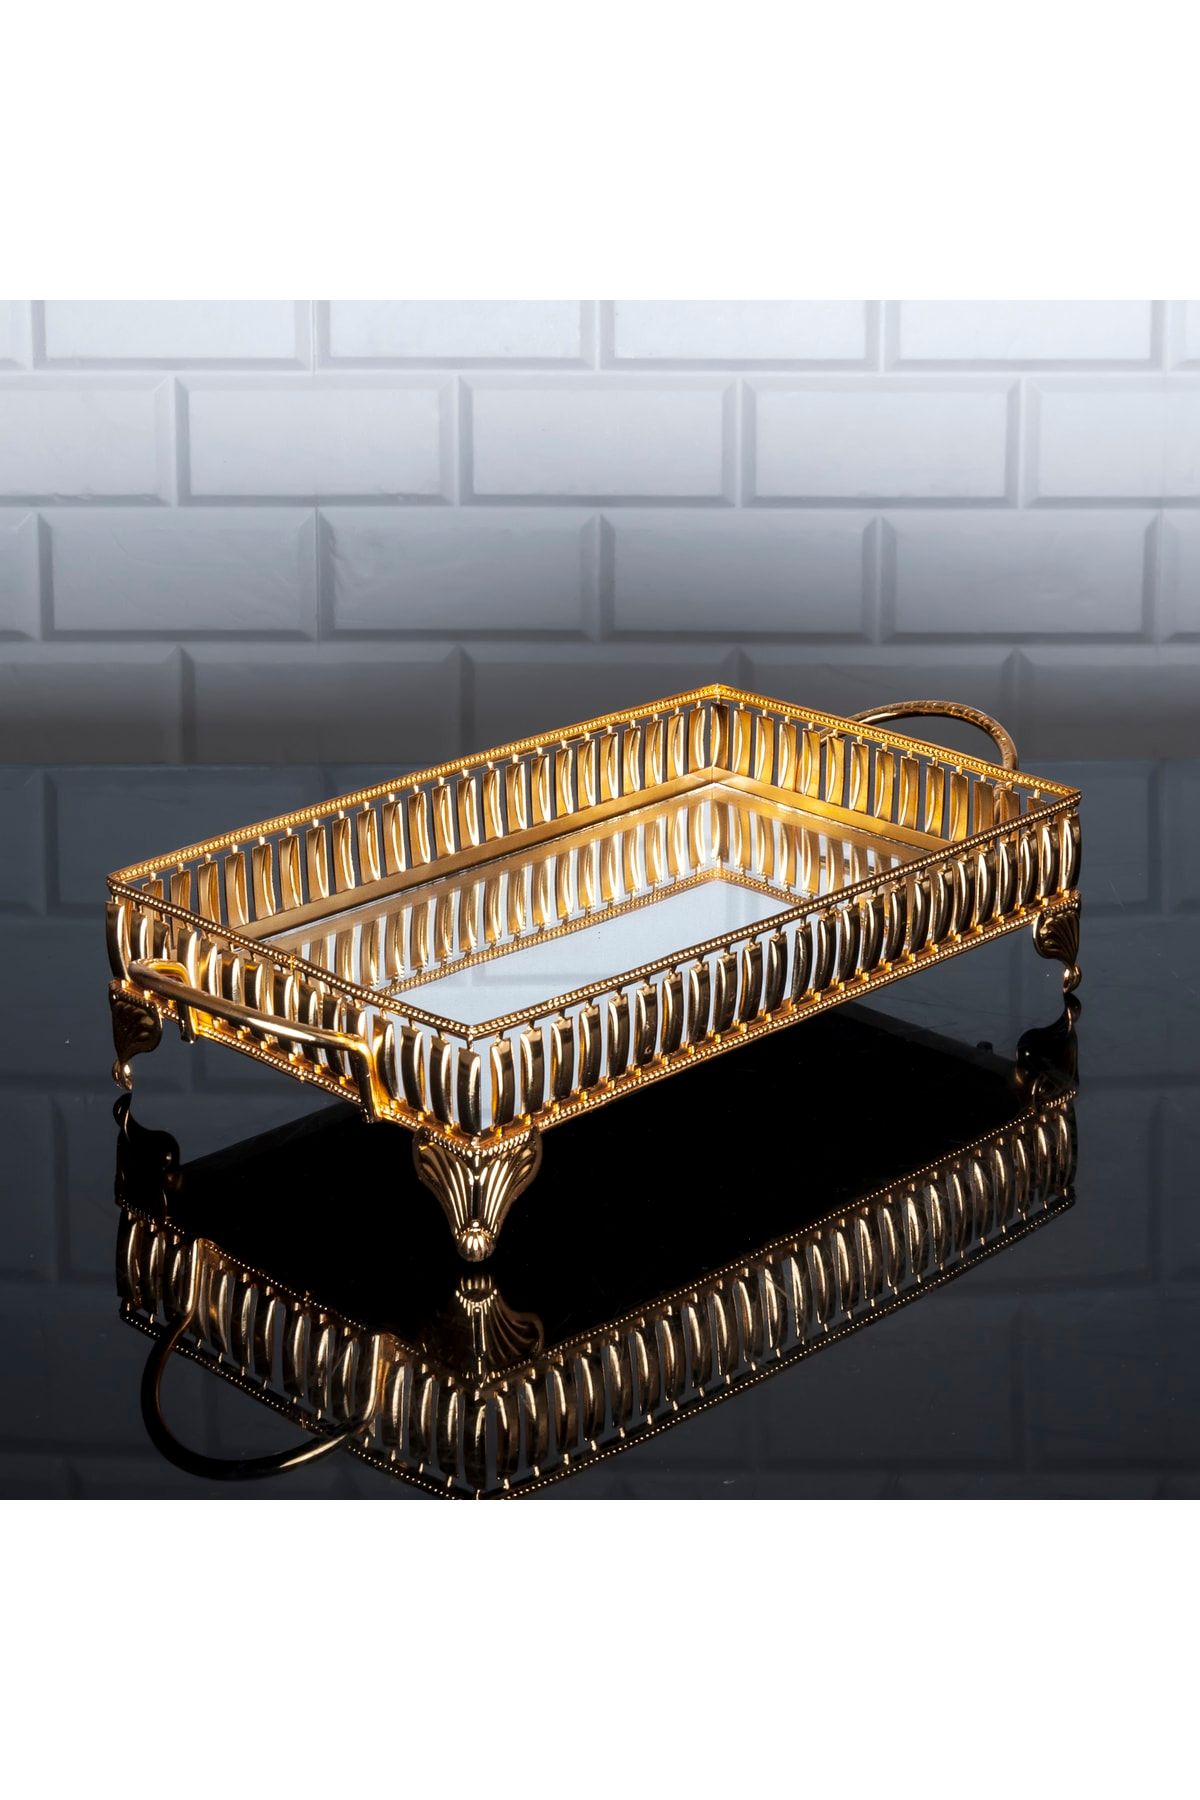 Zeyve Home Hürrem Dikdörtgen Küçük Tepsi Aynalı Metal Kulplu Sunumluk Çikolata Tepsisi Altın 40x18cm